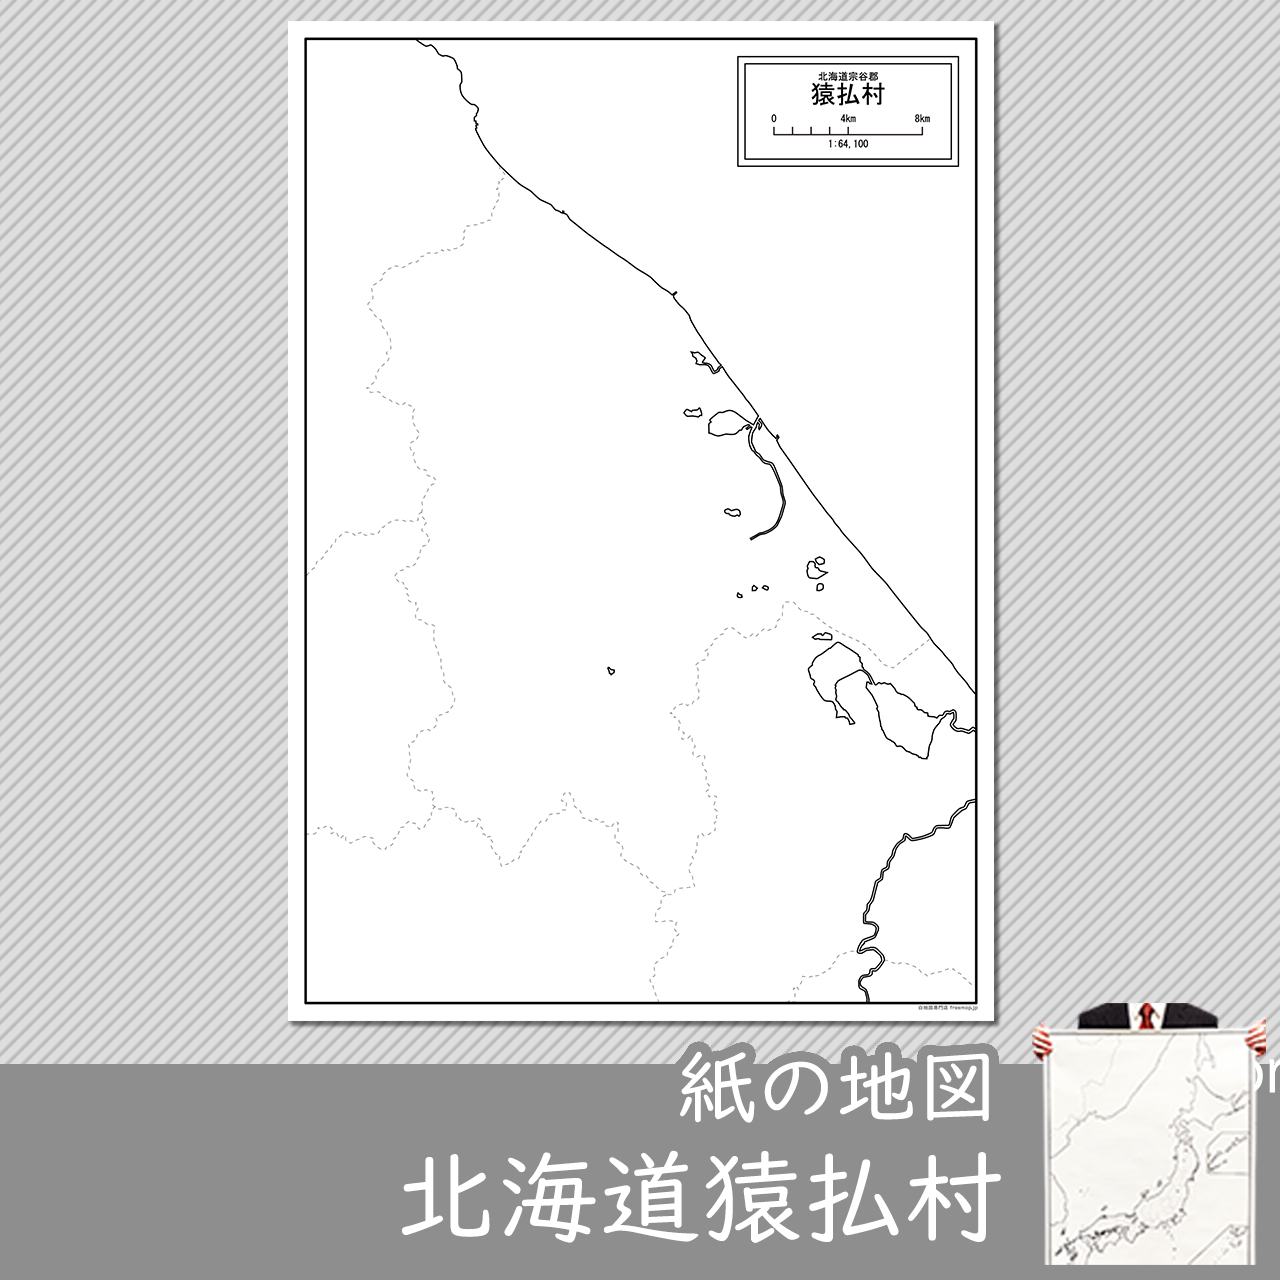 猿払村の紙の白地図のサムネイル